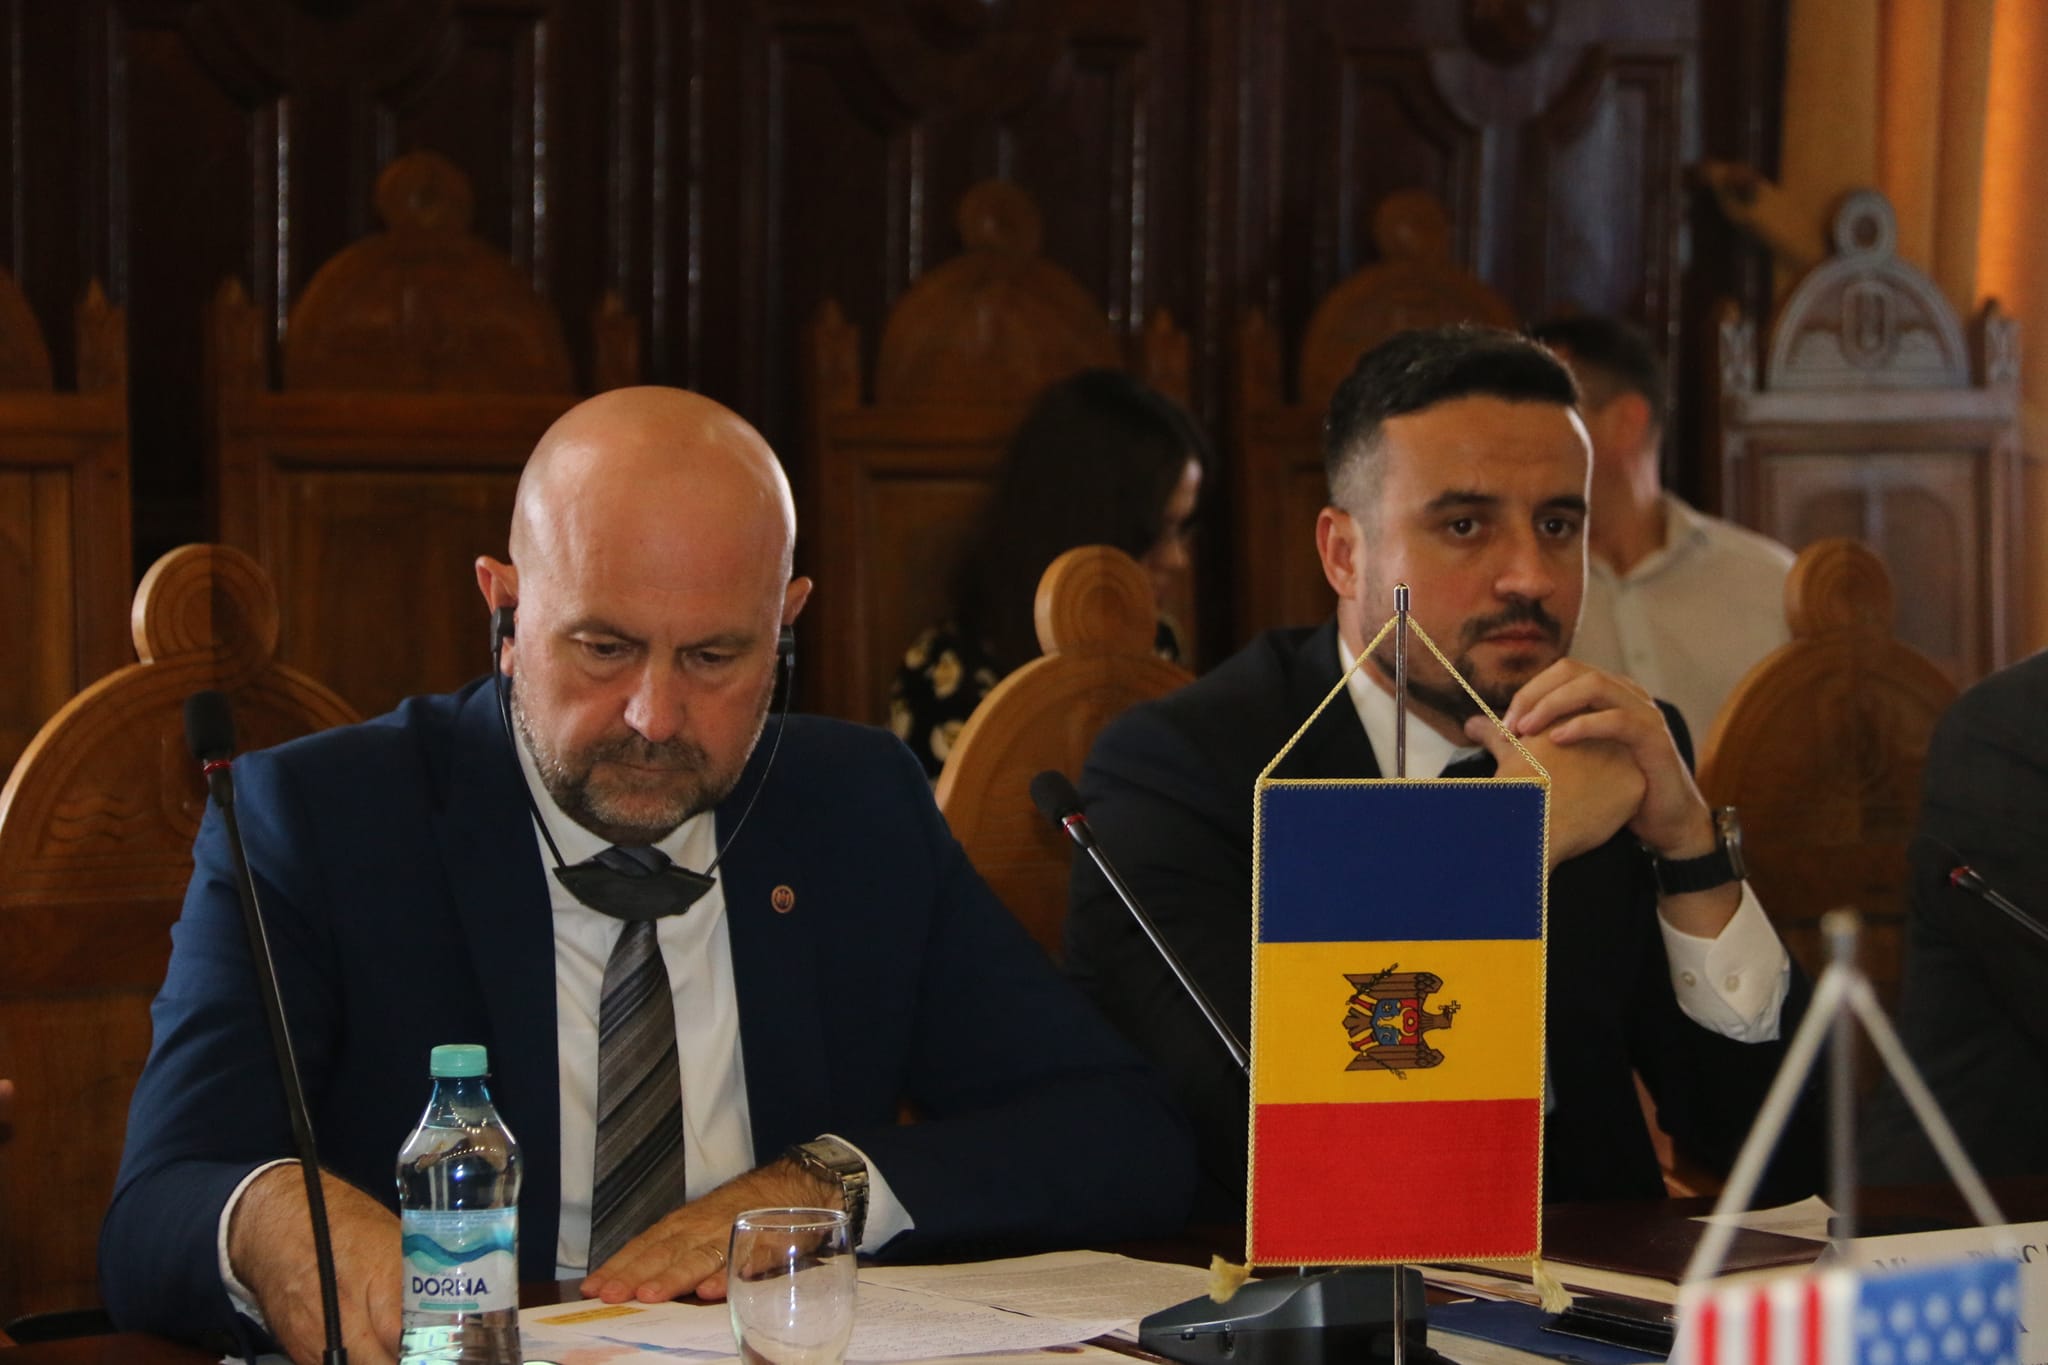 FOTO Reuniunea de la Galați: Vladimir Bolea a făcut apel la investiții în infrastructura feroviară și navală a Moldovei